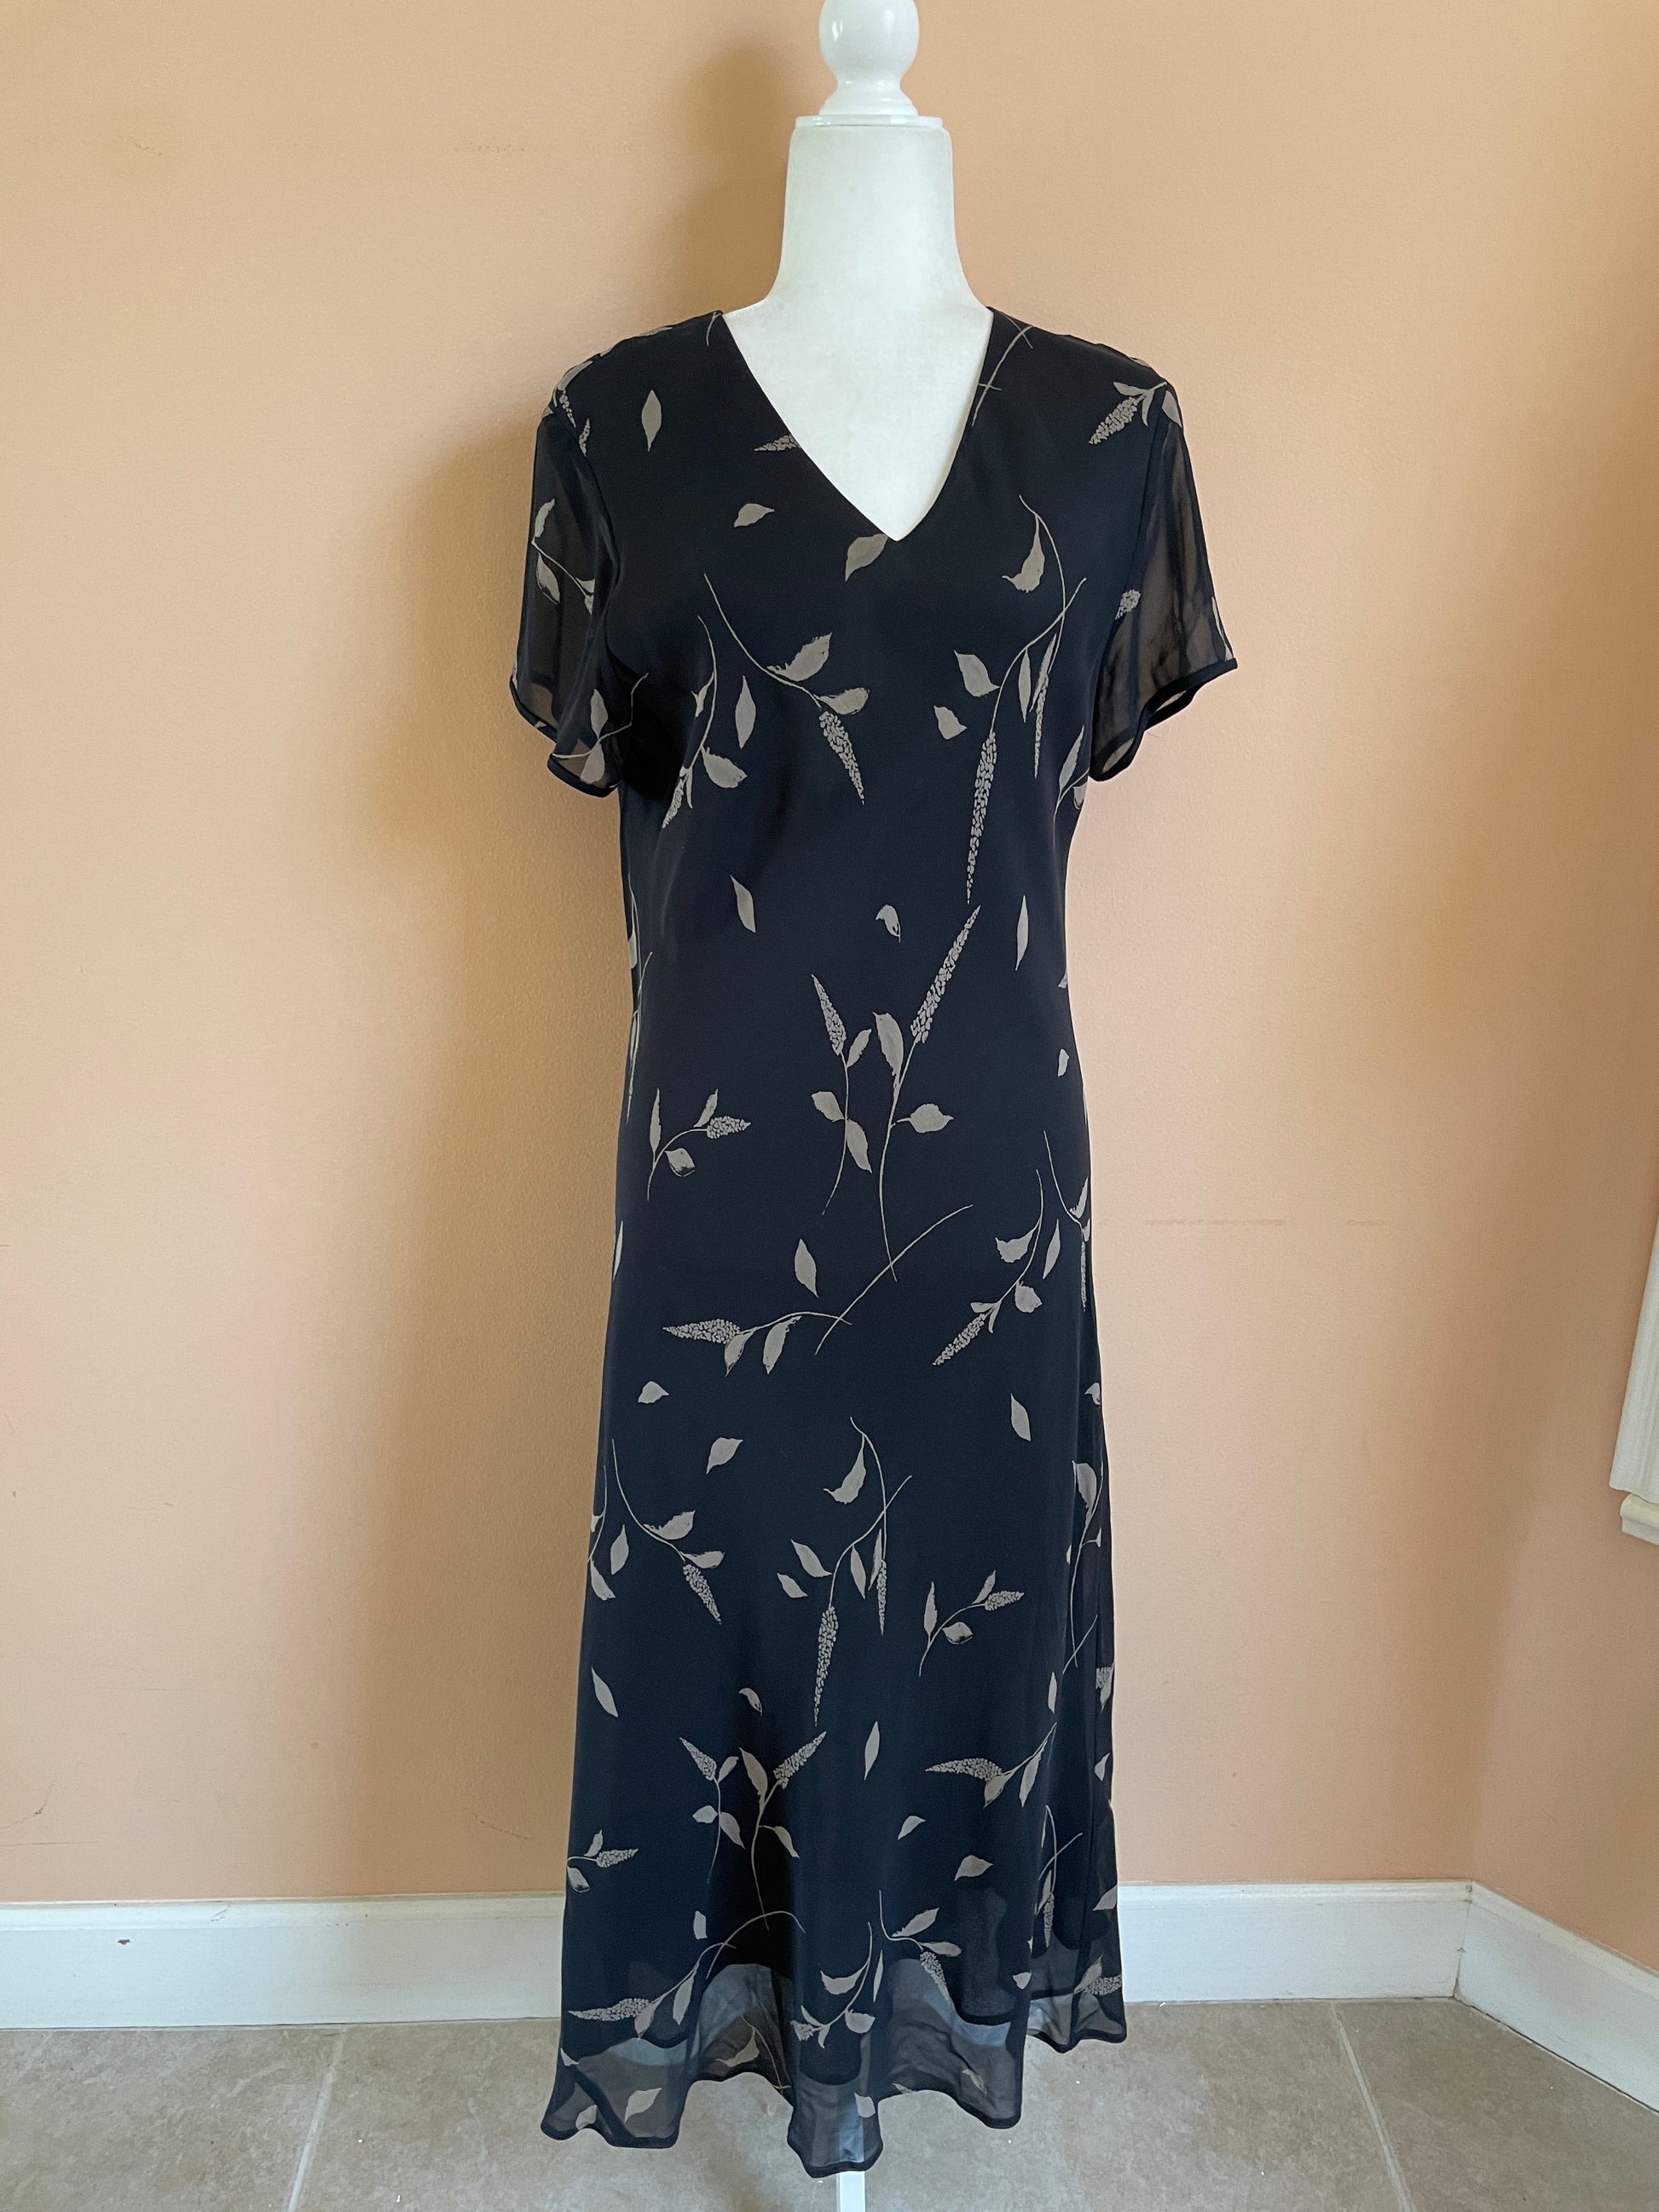  Falling Leaf 20OOs 100% Silk Black Long Sheath Dress